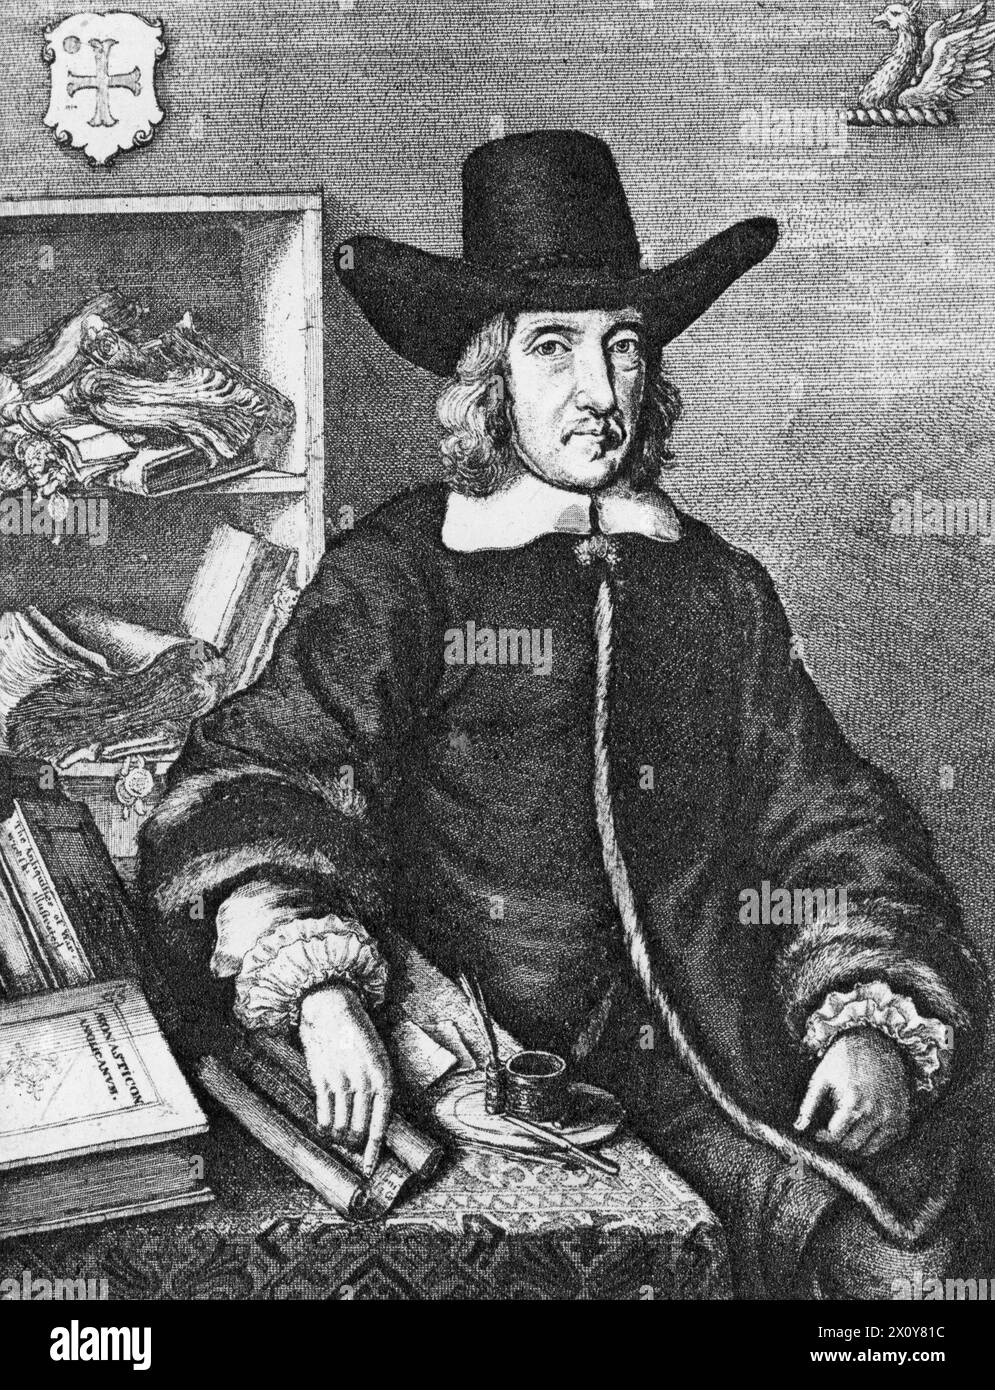 Sir William Dugdale (1605-1686), 1656. Von Wenceslaus Hollar (1607-1677). Dugdale war ein englischer Antiquar und Herald. Als Gelehrter war er maßgeblich an der Entwicklung der mittelalterlichen Geschichte als akademisches Fach beteiligt. Aus dem Frontispiece von The Antiquities of Warwickshire Illustrated, 1656. Stockfoto